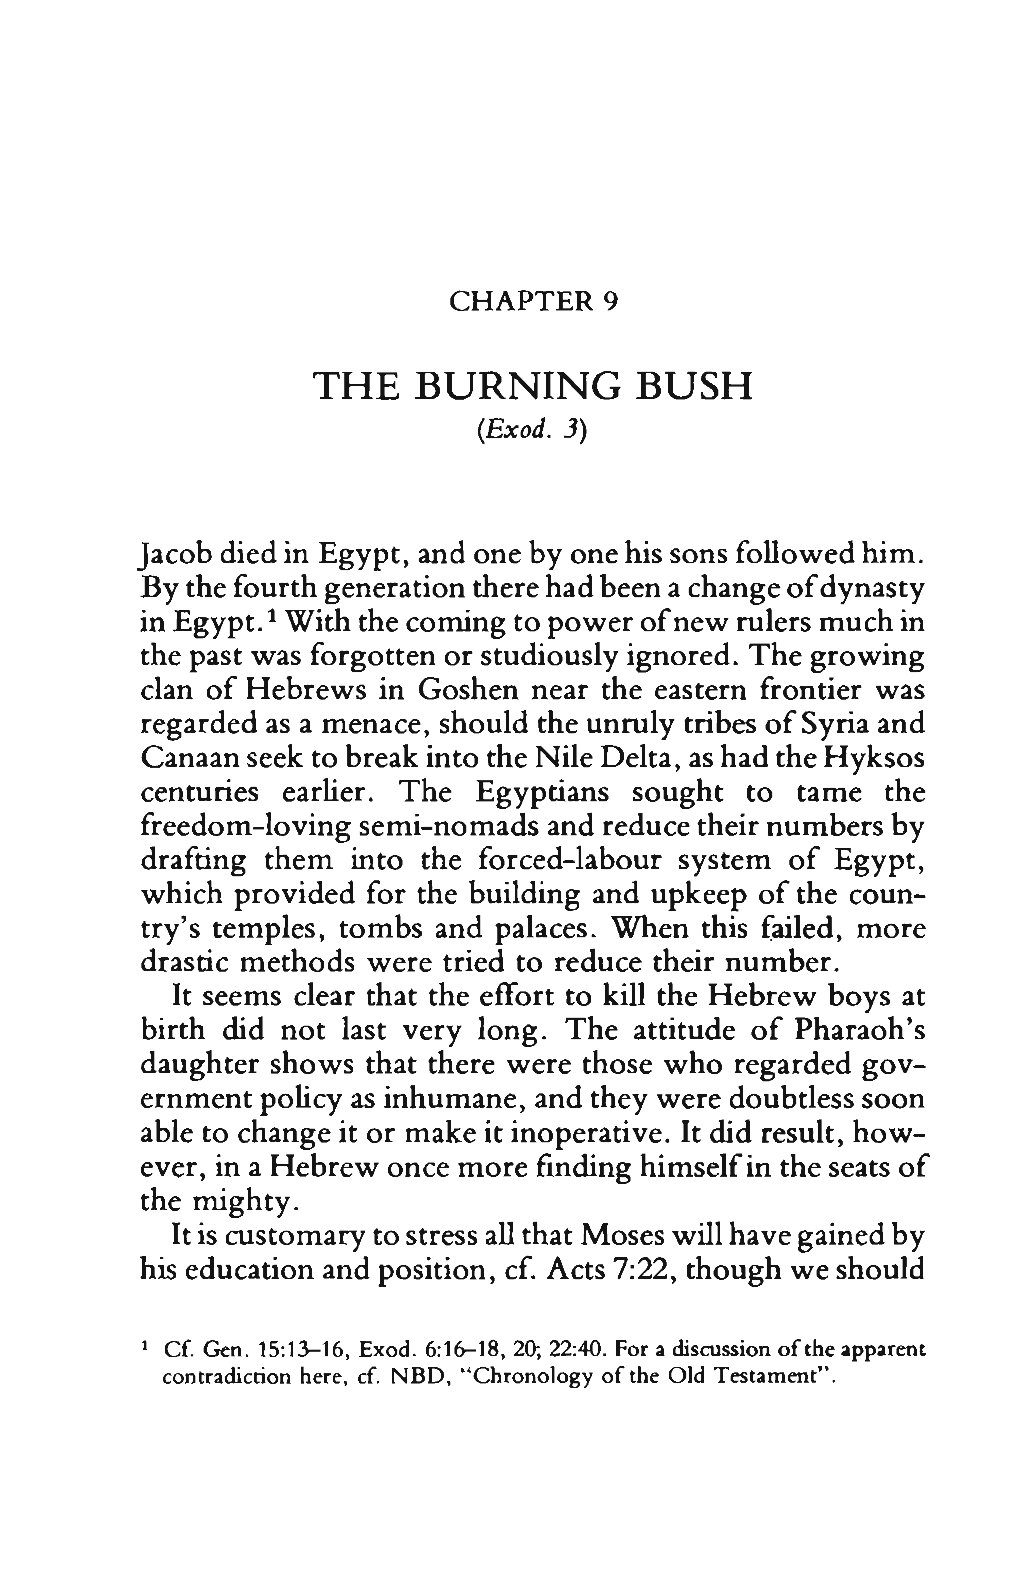 THE BURNING BUSH (Exod